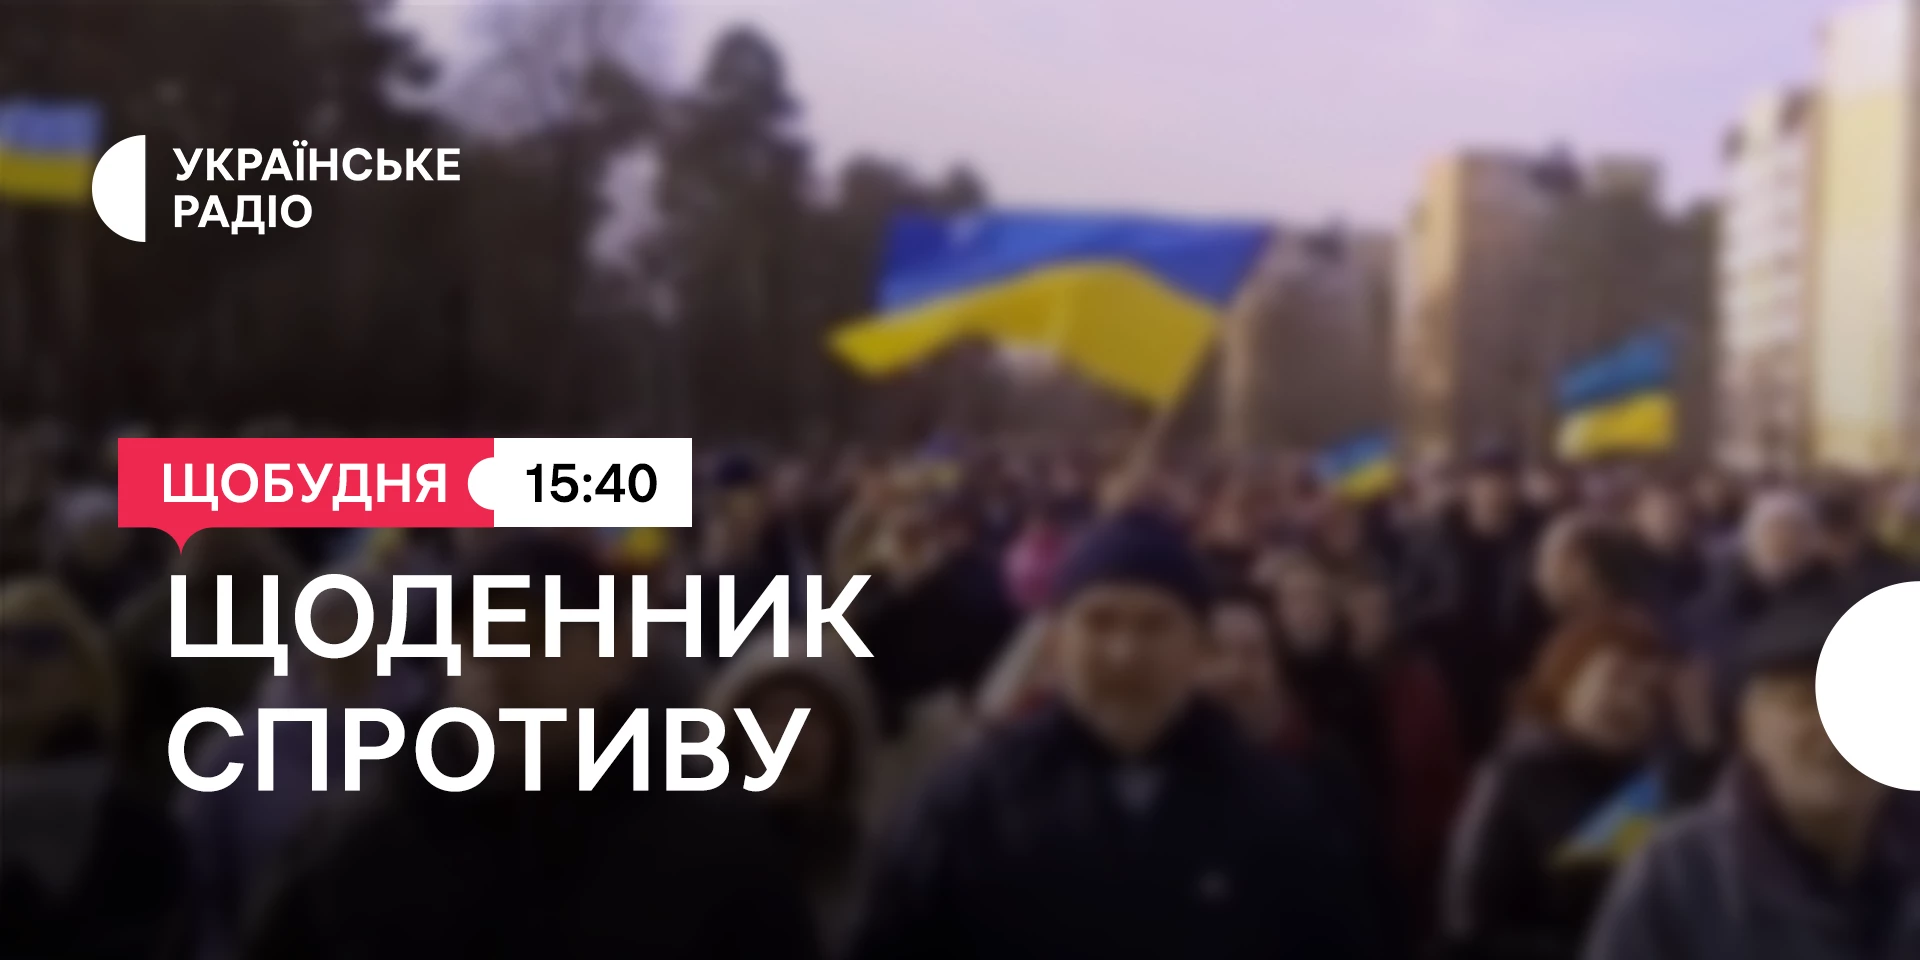 «Українське радіо» презентує новий проєкт «Щоденник спротиву»